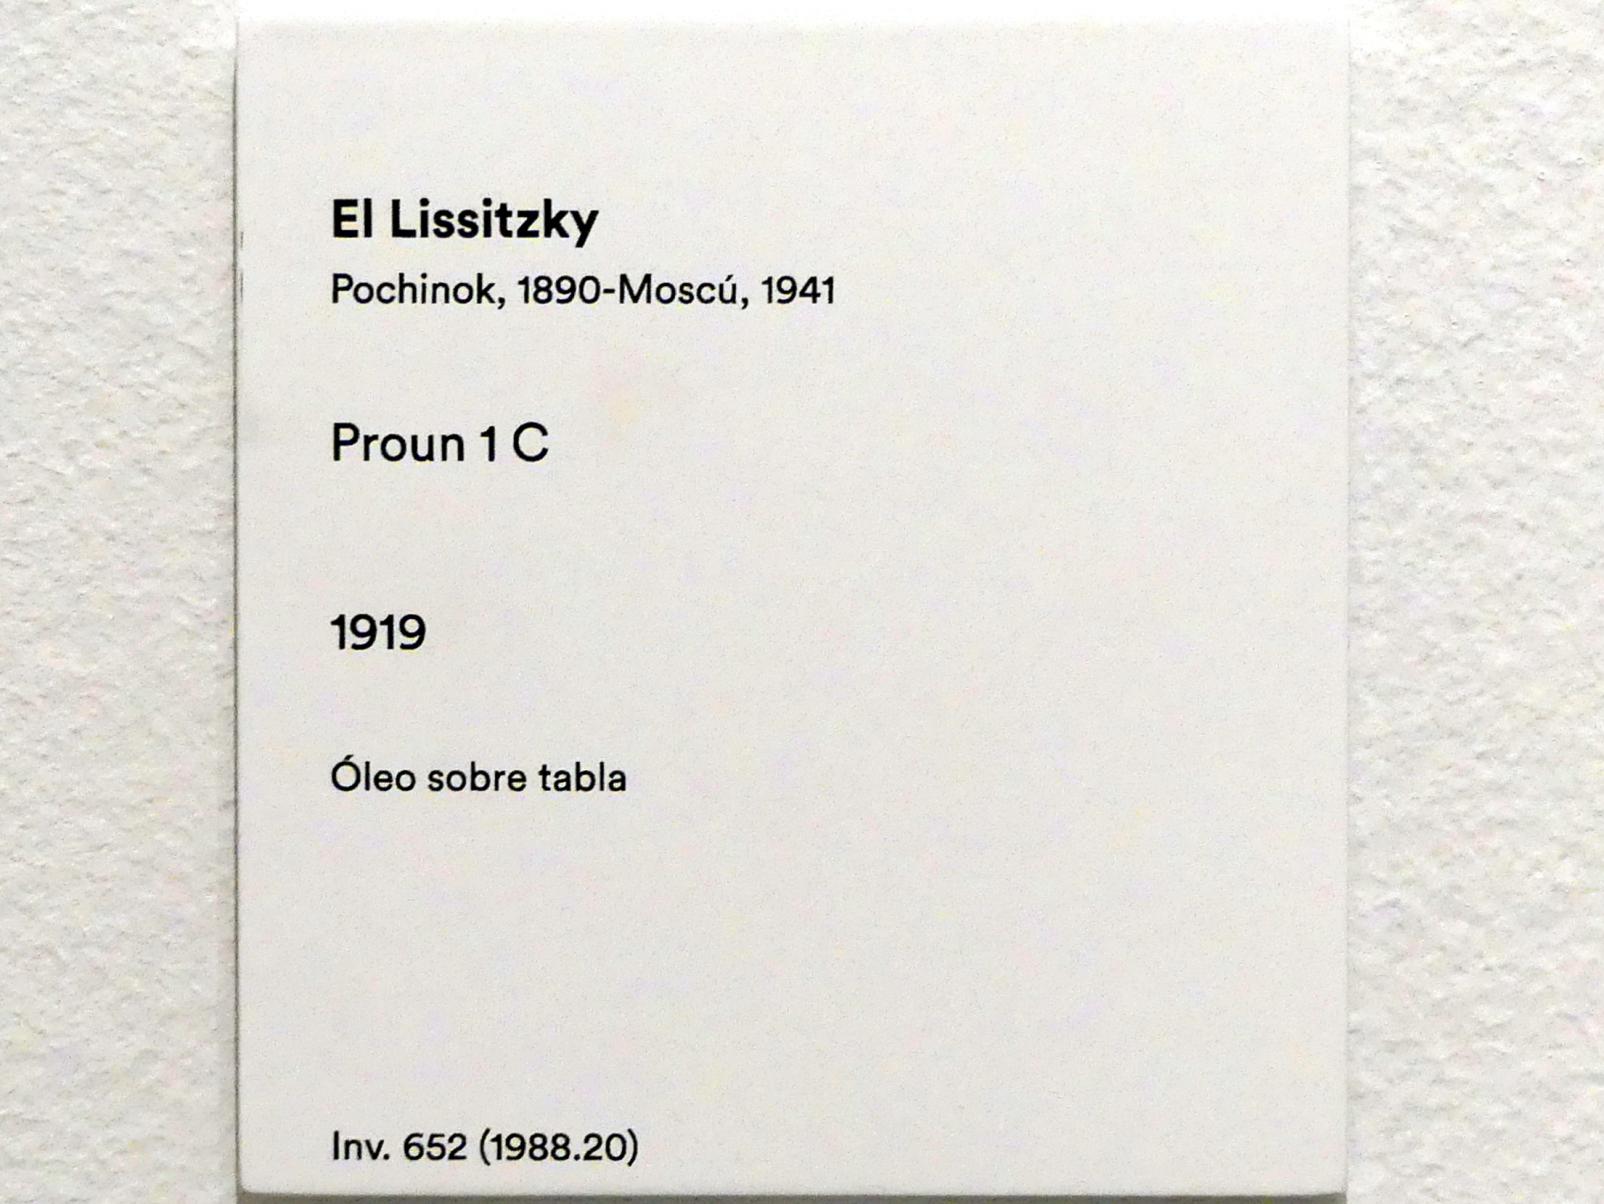 El Lissitzky (1919–1923), Proun 1 C, Madrid, Museo Thyssen-Bornemisza, Saal 43, Pioniere der Abstraktion, 1919, Bild 2/2